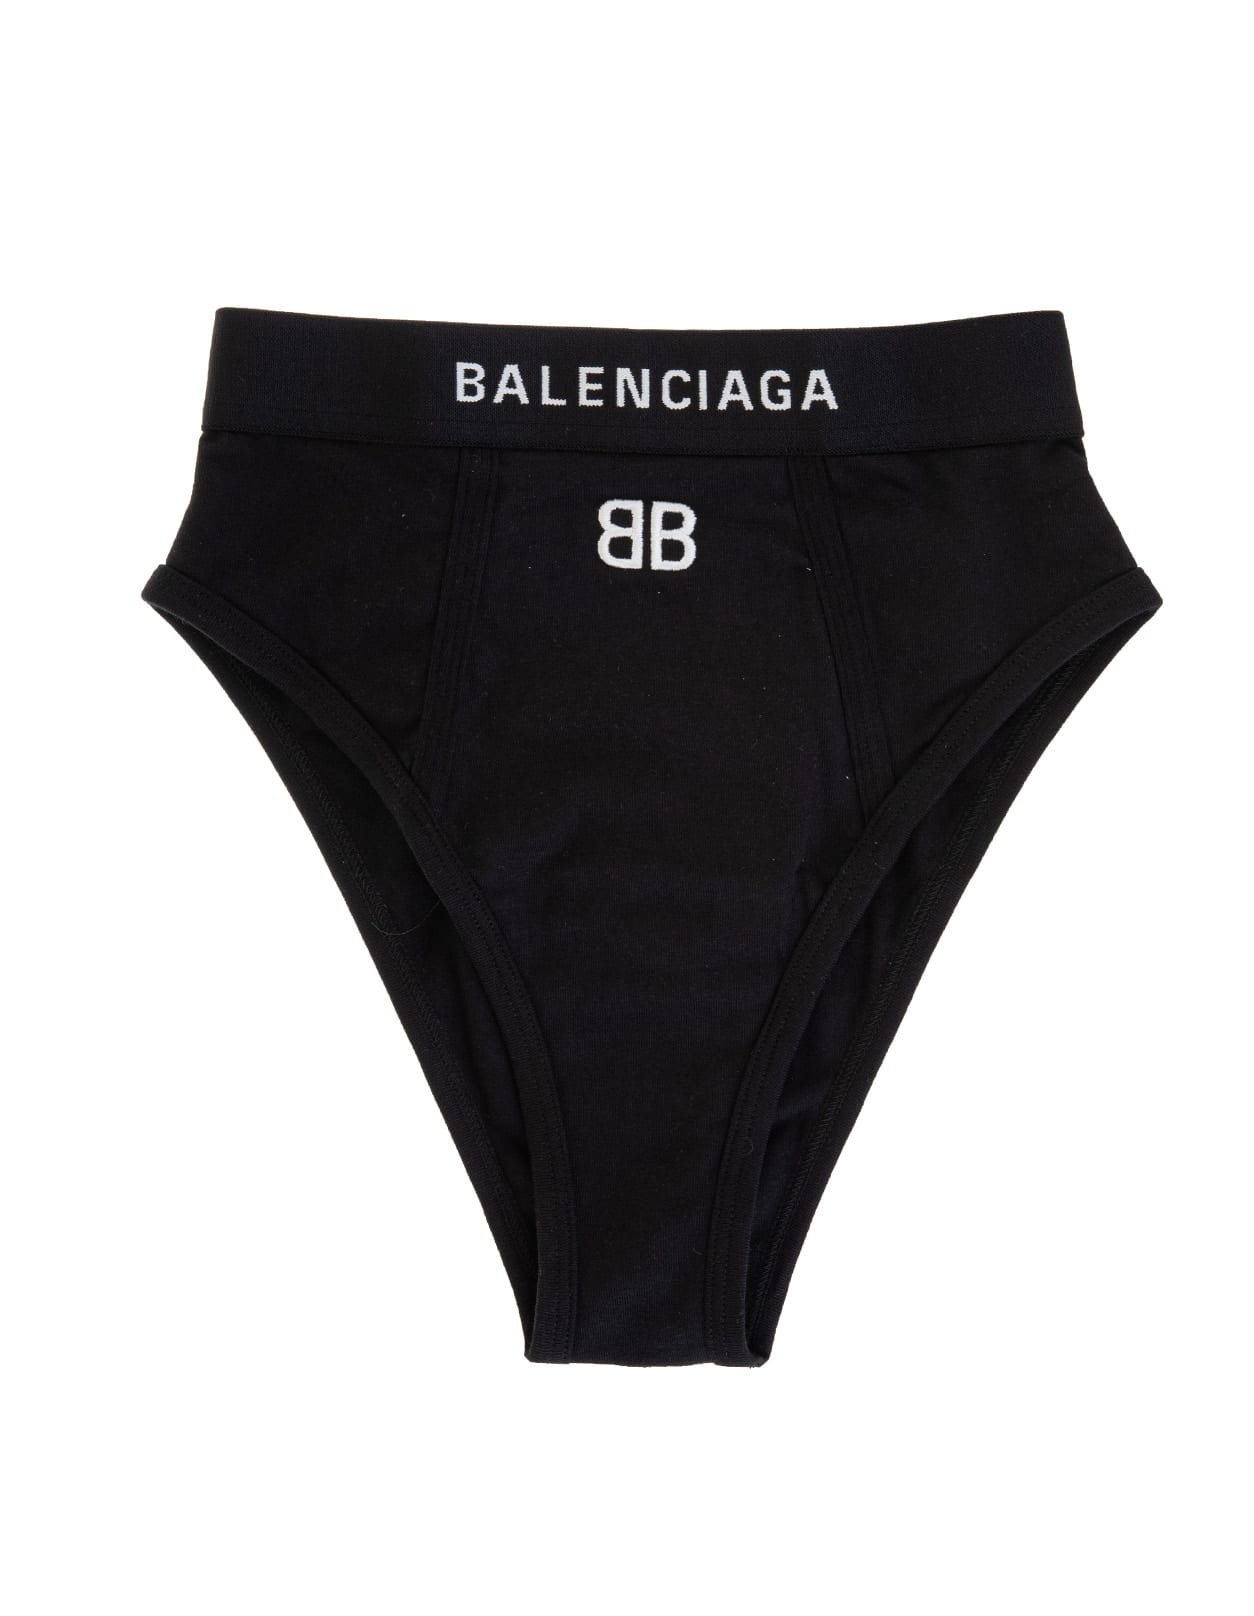 Balenciaga Woman Black High Waist Briefs With Bb Logo